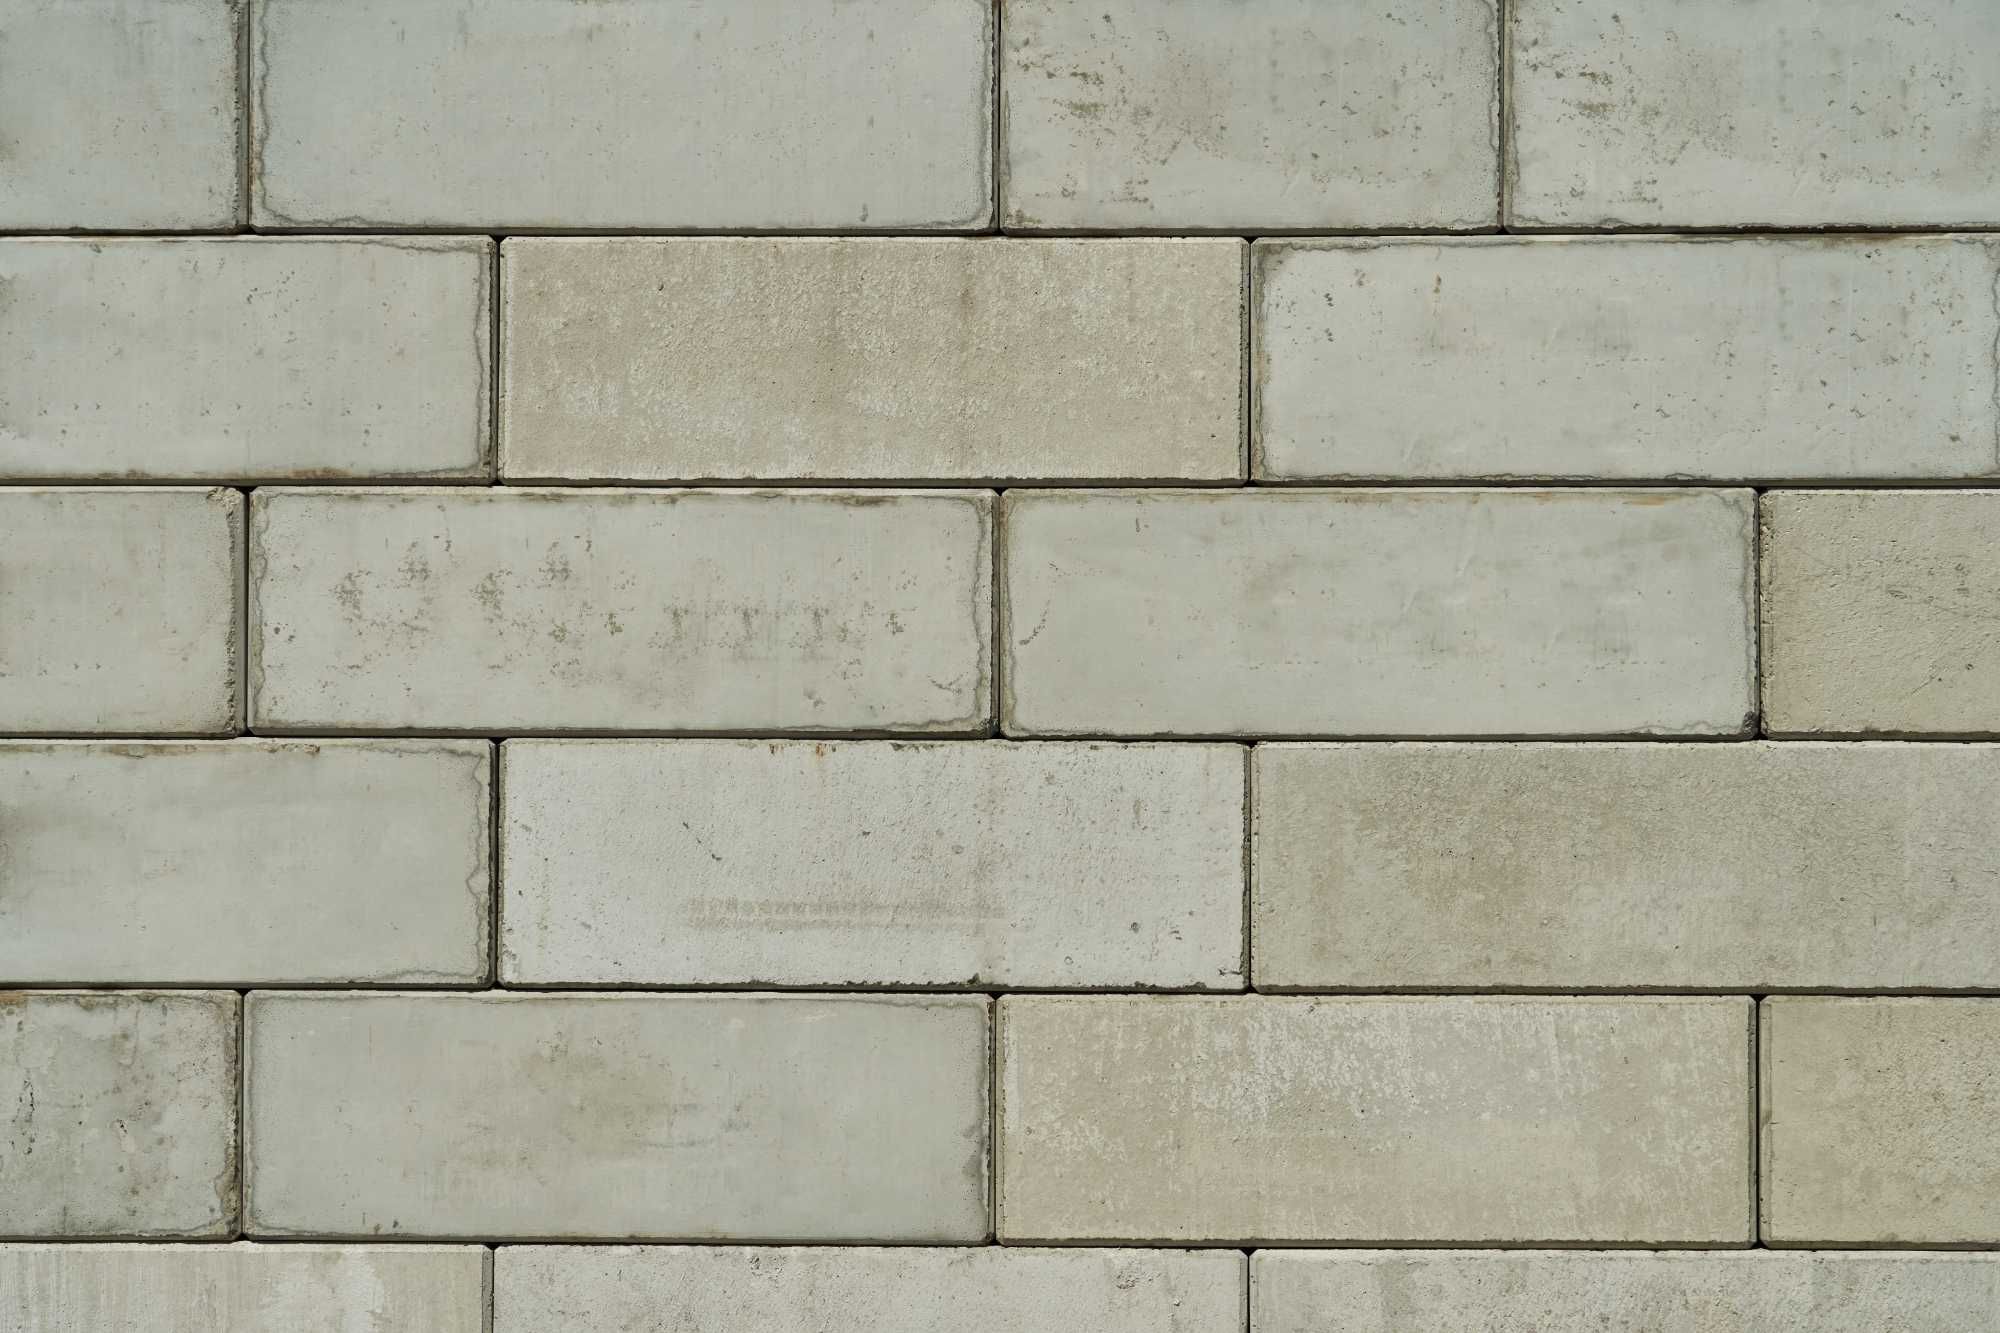 Bloki betonowe klocki zasieki mur oporowy przeciwpożarowe boksy ppoż